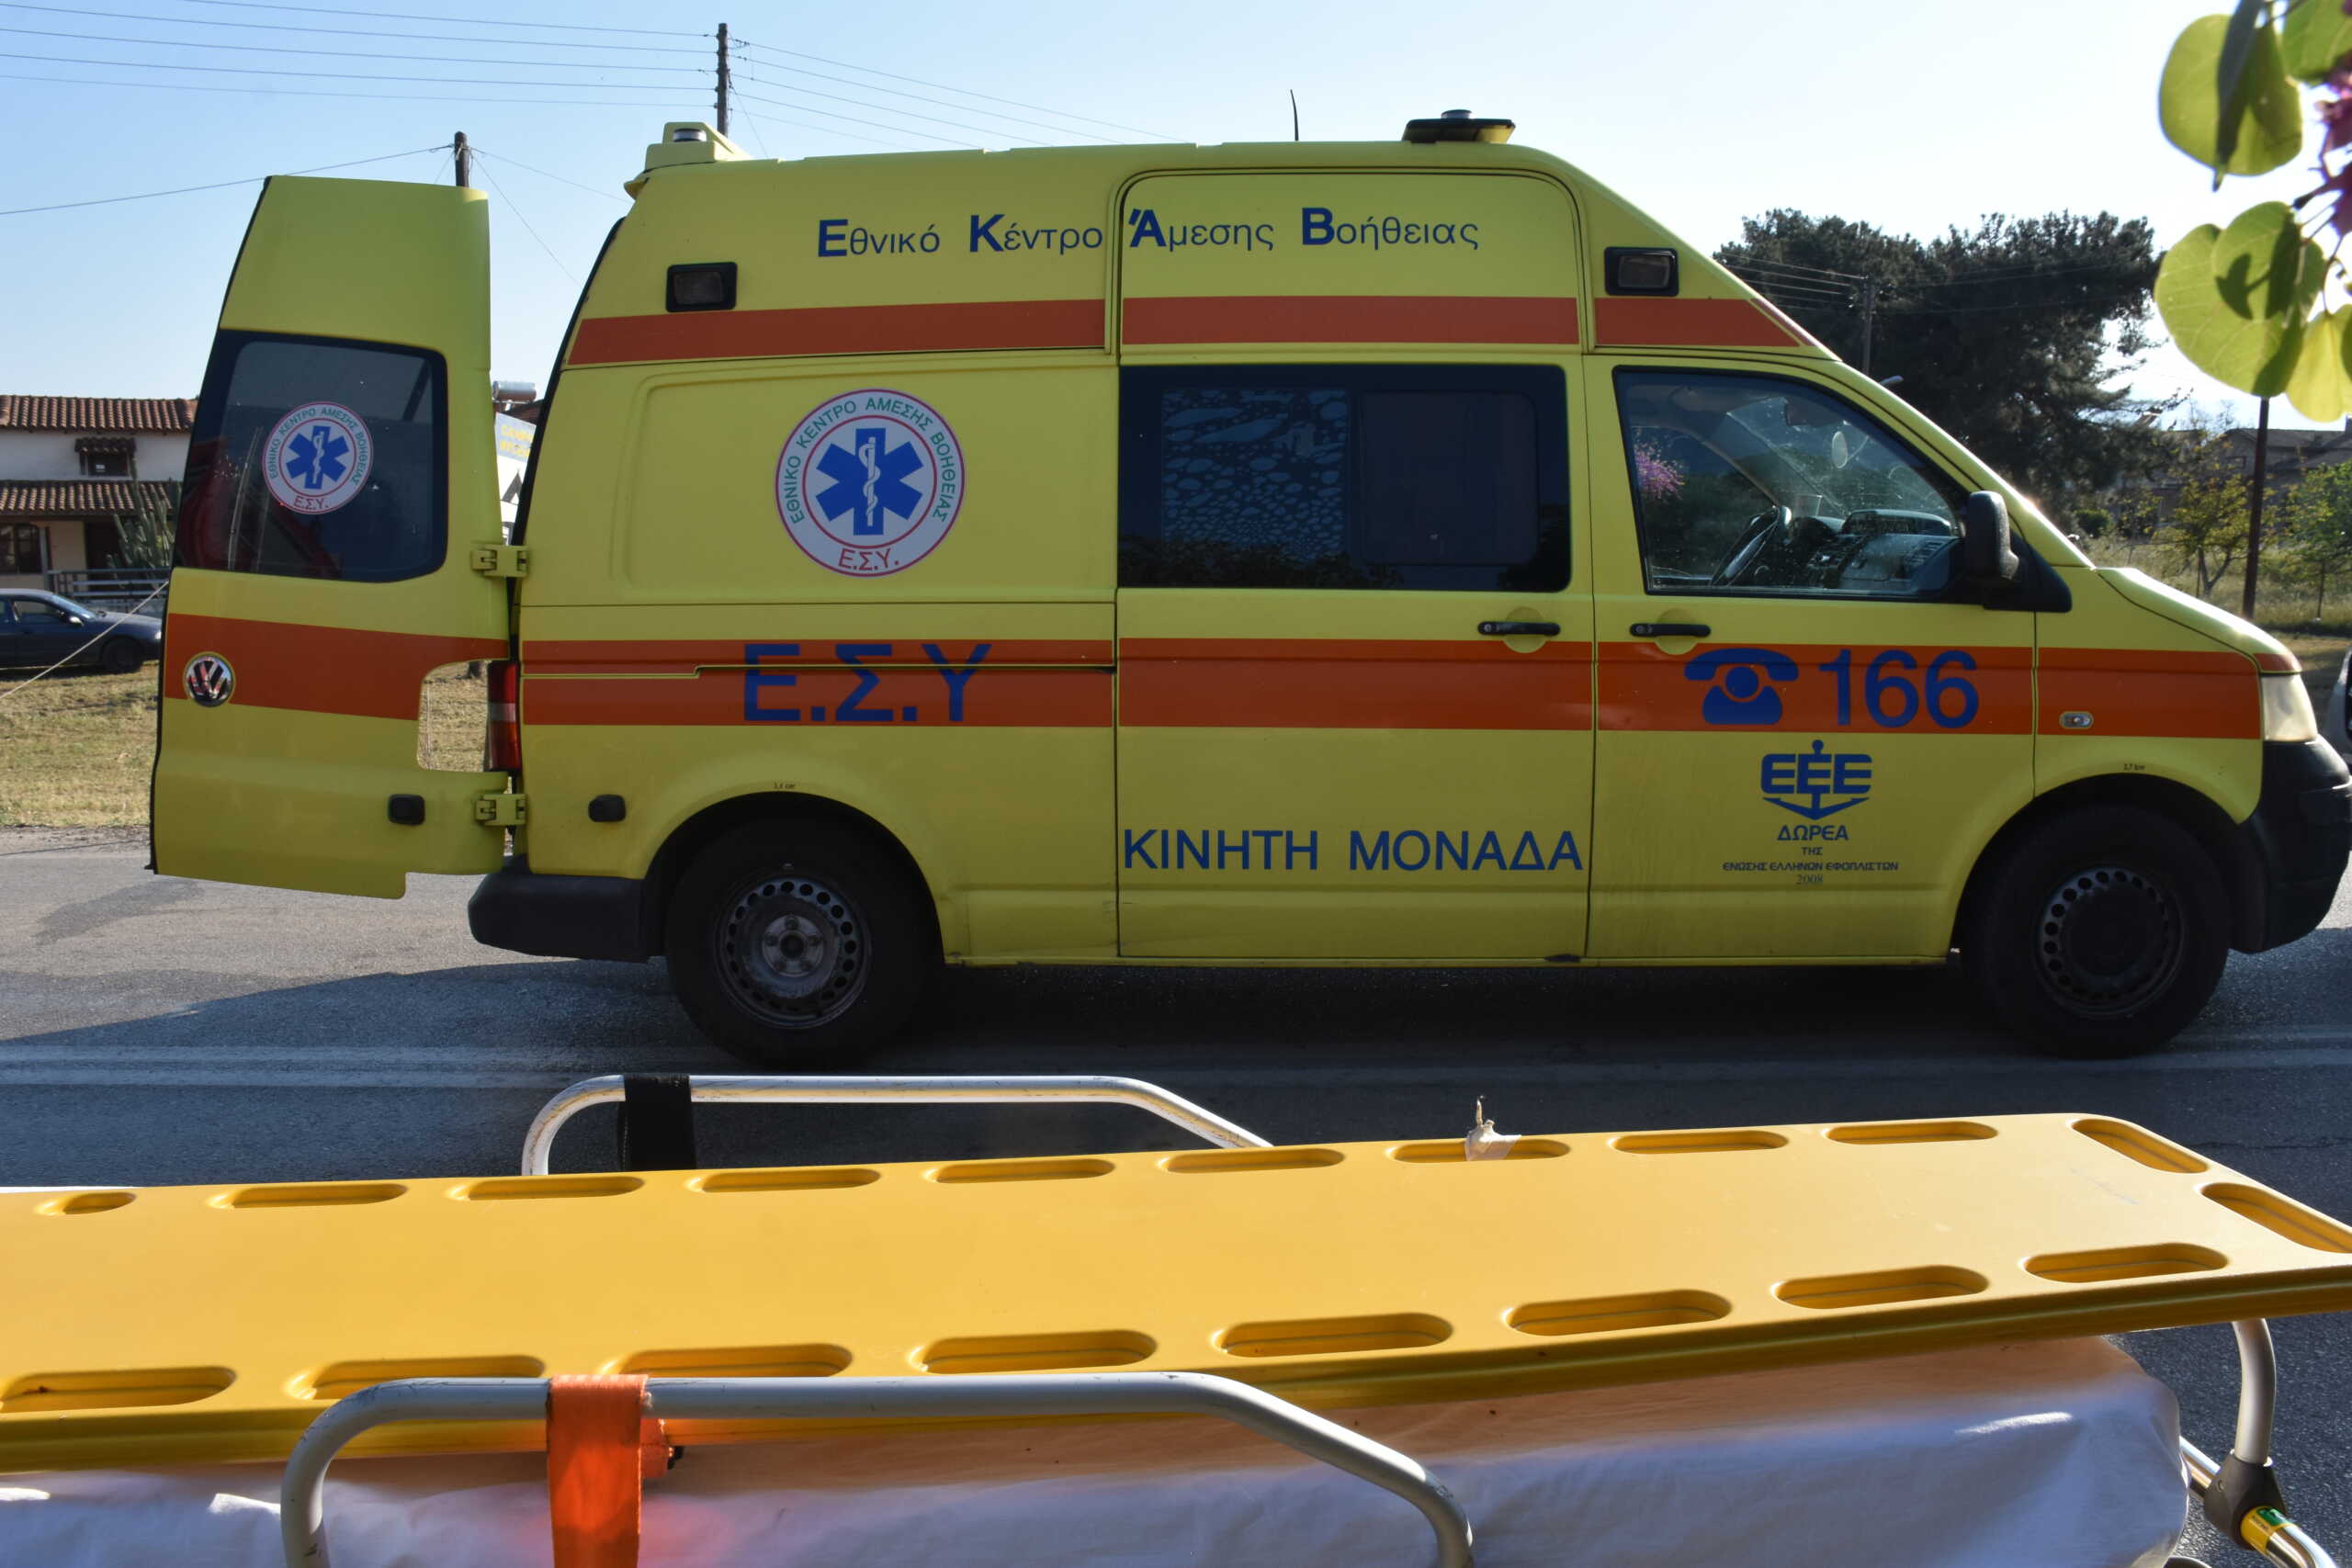 Ελευσίνα: Ένας νεκρός και ένας σοβαρά τραυματίας στο τροχαίο που έγινε τα ξημερώματα